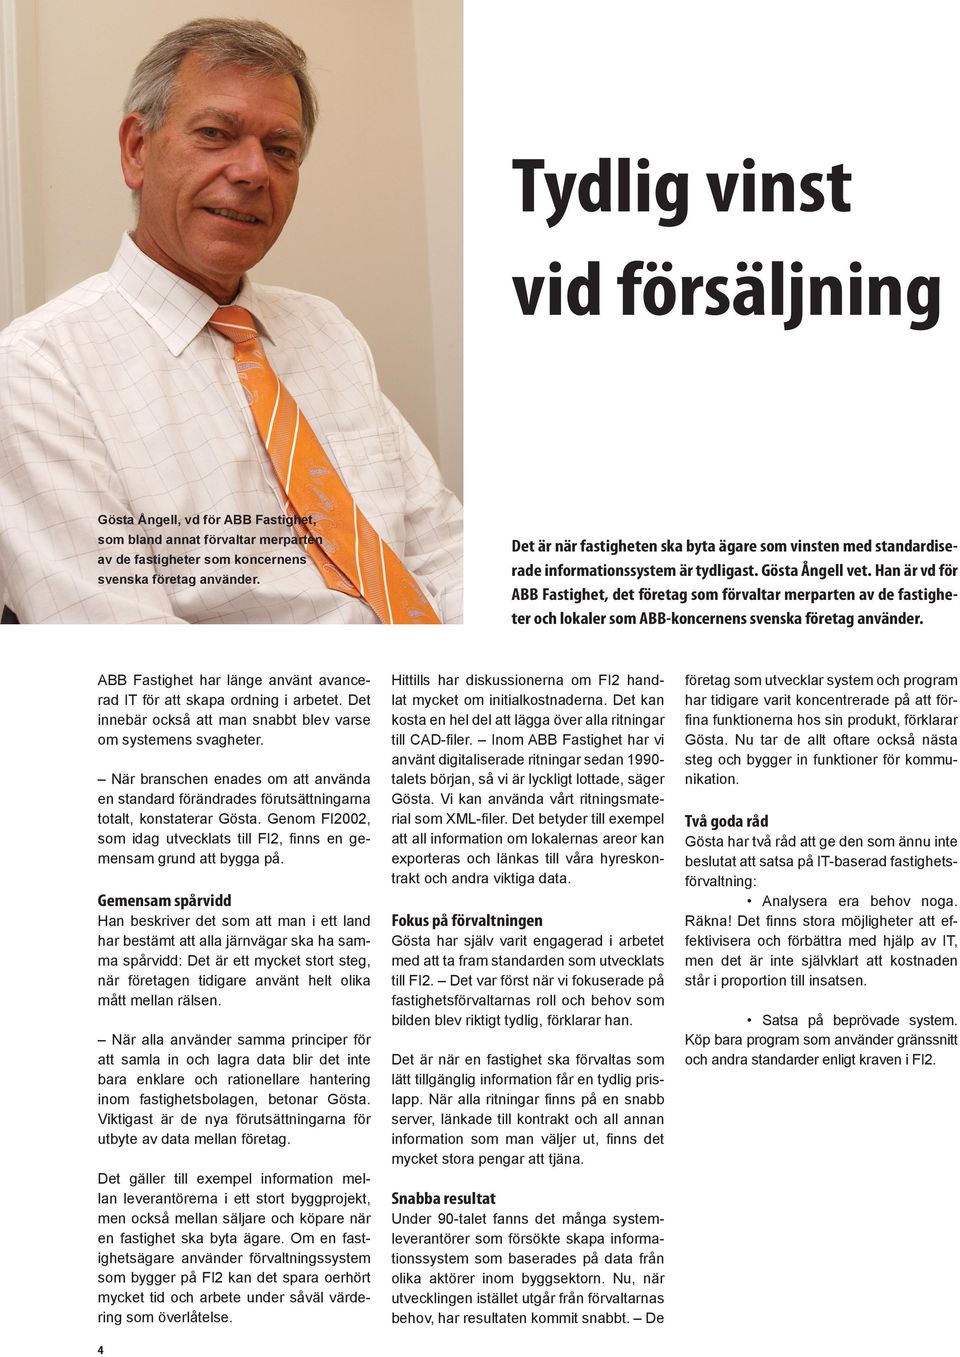 Han är vd för ABB Fastighet, det företag som förvaltar merparten av de fastigheter och lokaler som ABB-koncernens svenska företag använder.